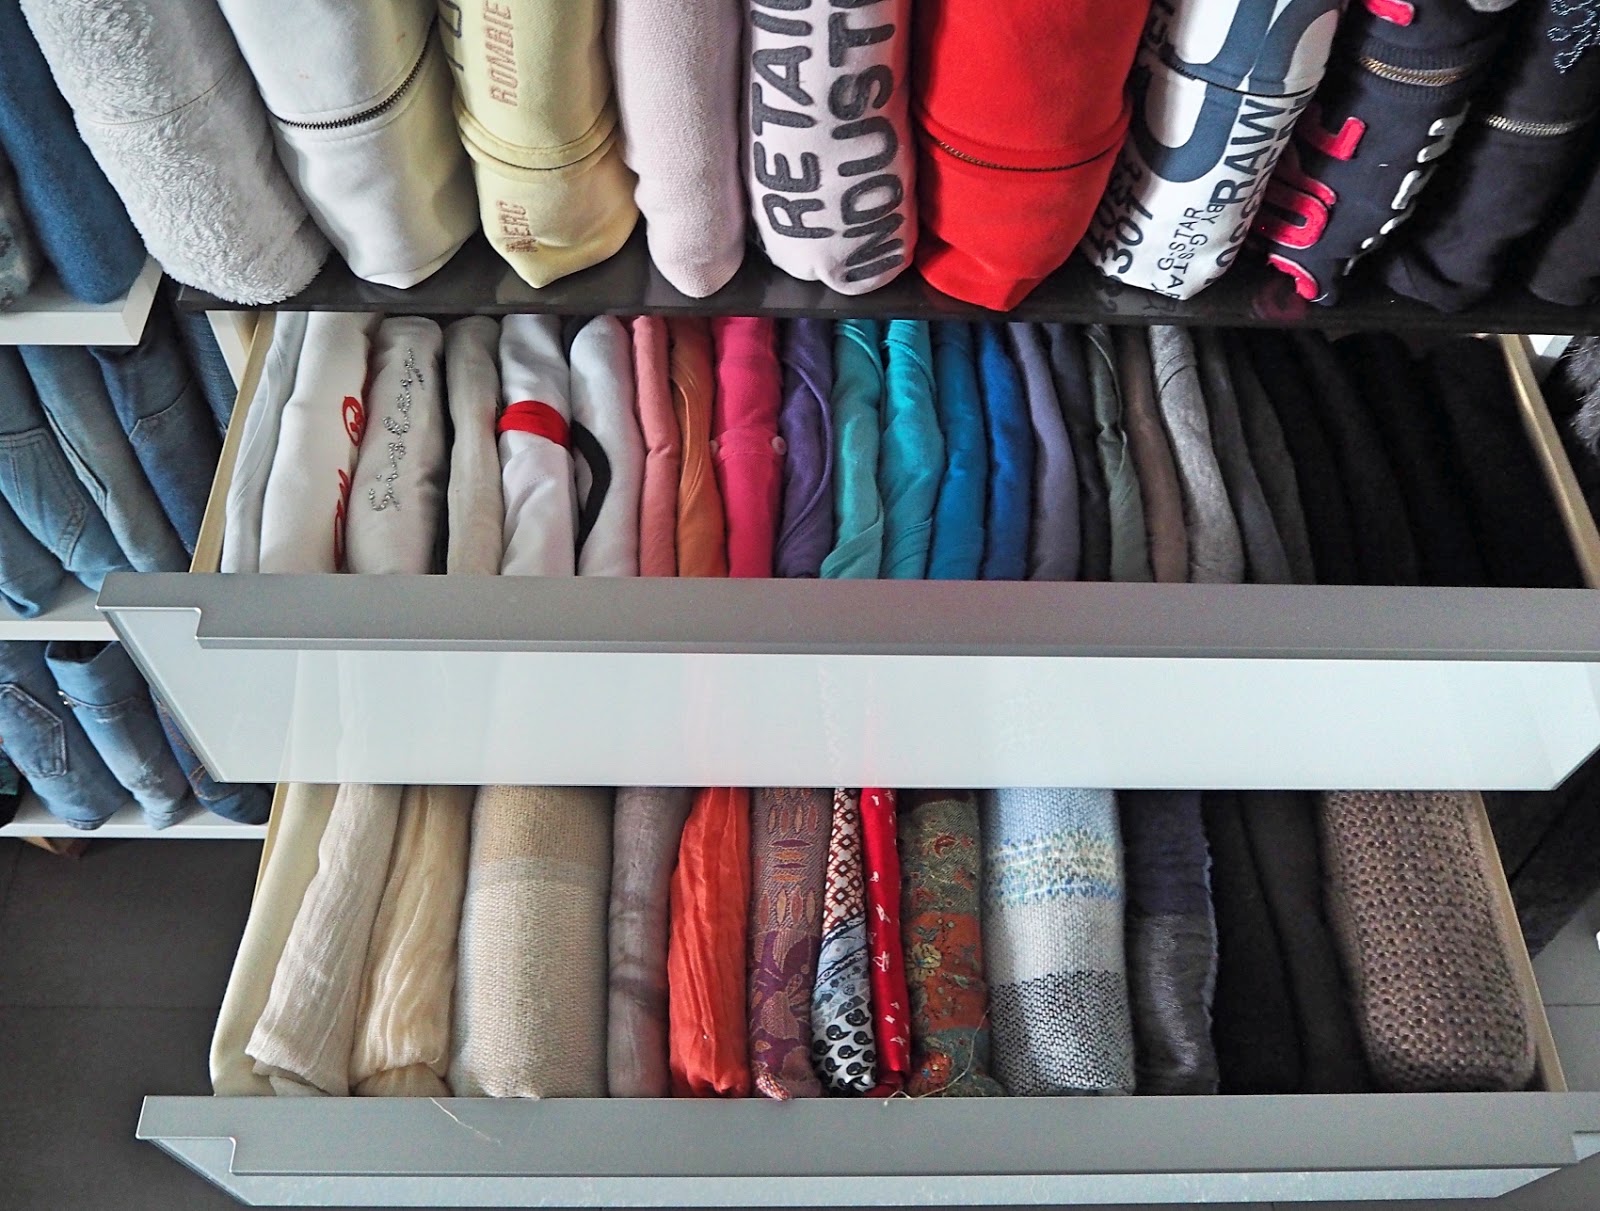 Kleiderschrank Nach Farben Sortieren